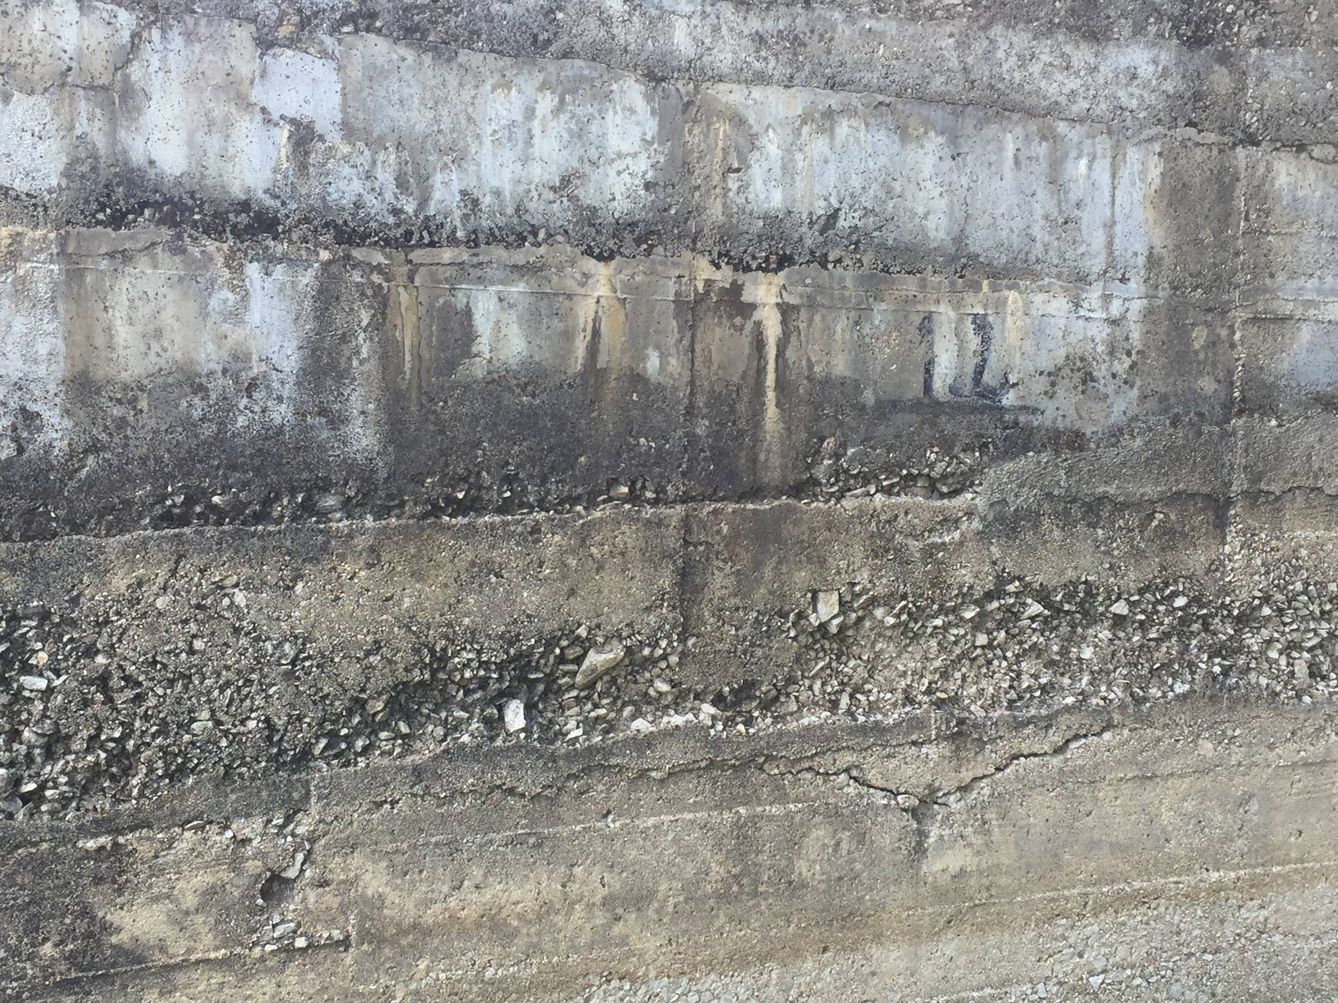 Detalle del muro de la presa con grieta en la parte inferior (A.V)